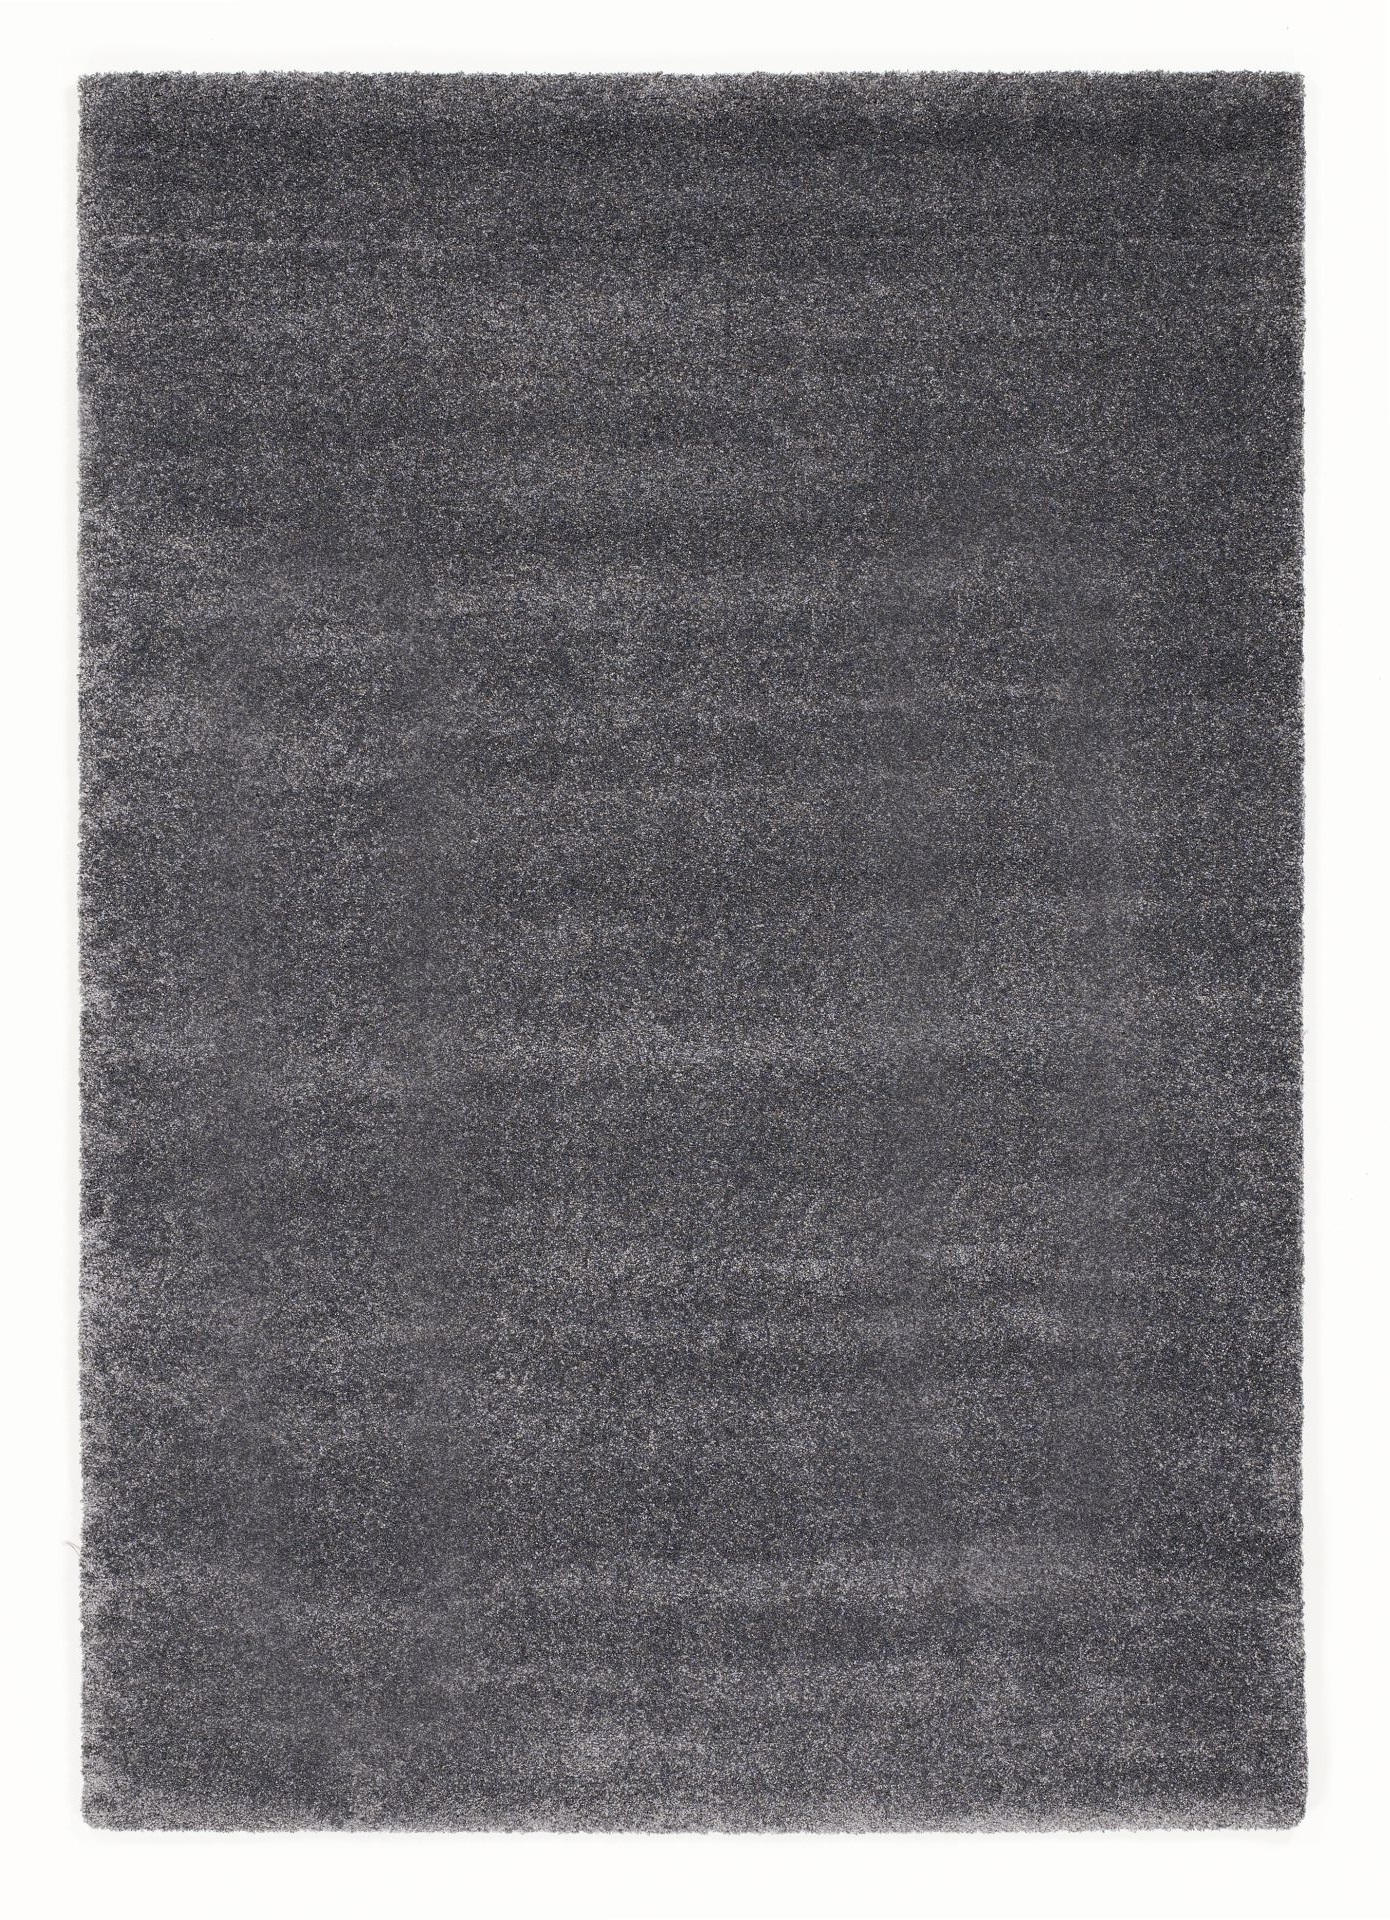 HOCHFLORTEPPICH 140/200 cm Bellevue  - Dunkelgrau, Basics, Textil (140/200cm) - Novel